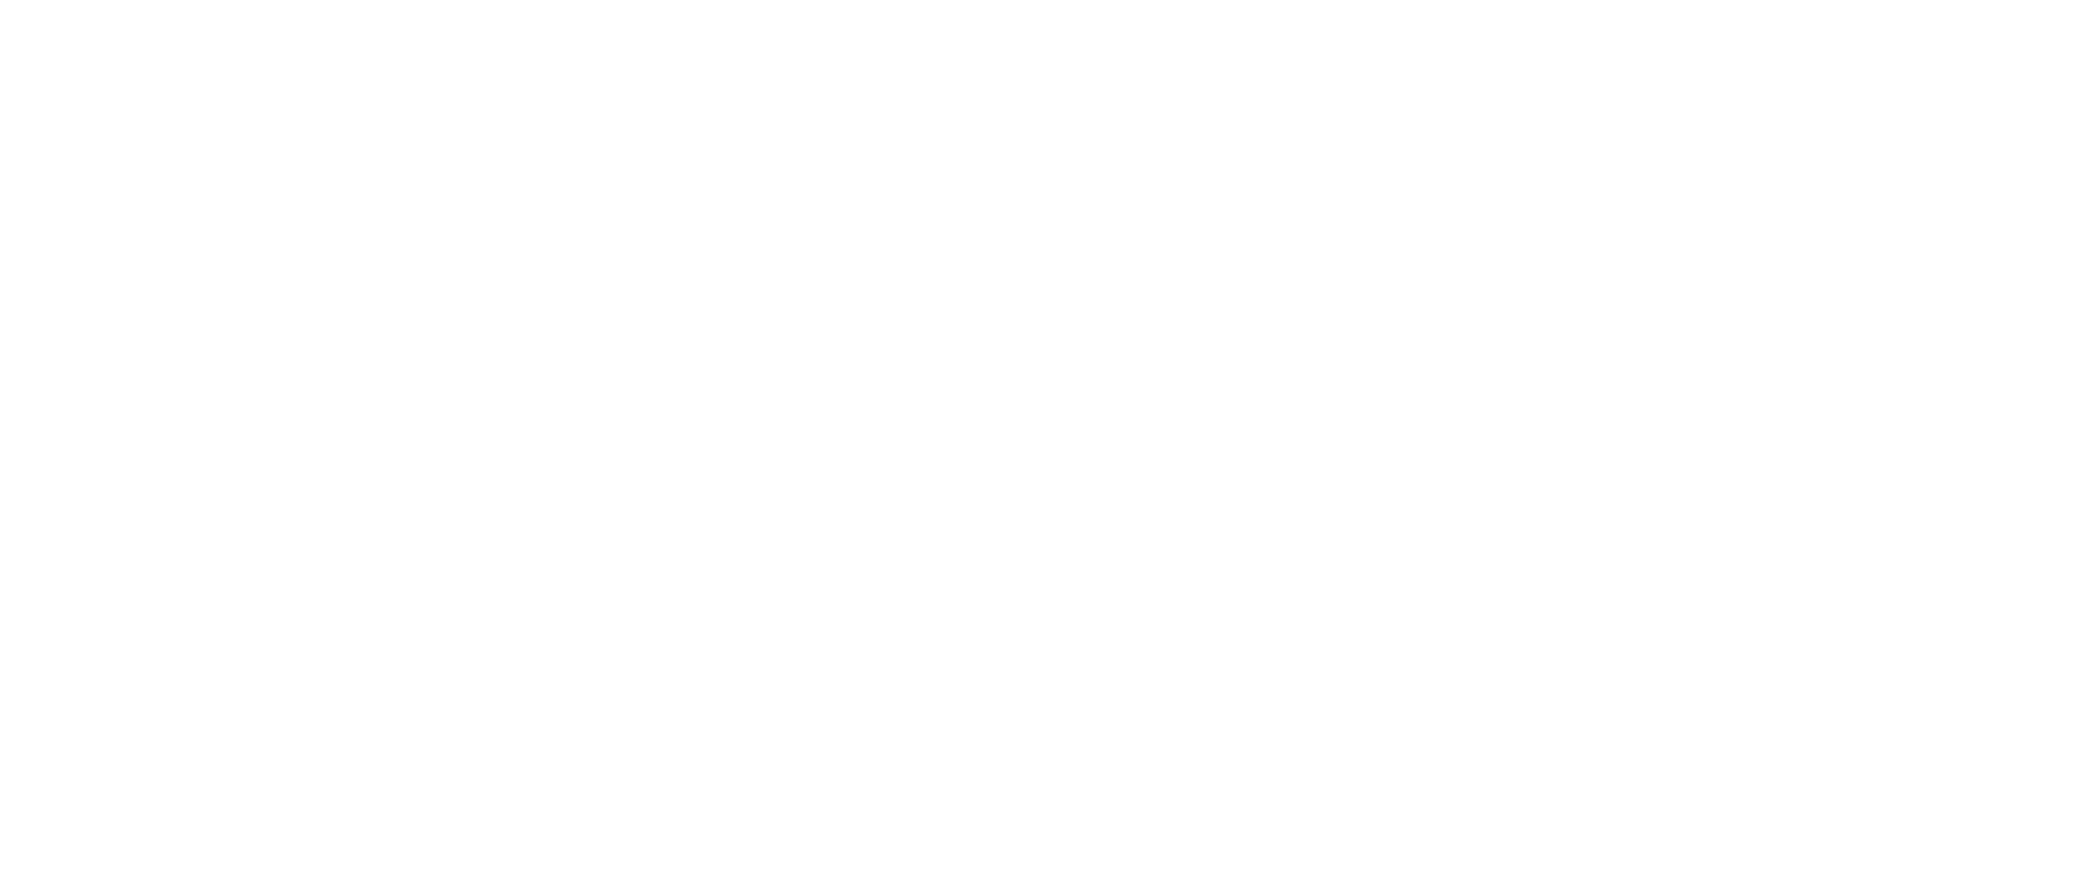 Reibiza | Mercadillo online Ibiza & Formentera | Artesanos, Moda, Kids, Gastronomía